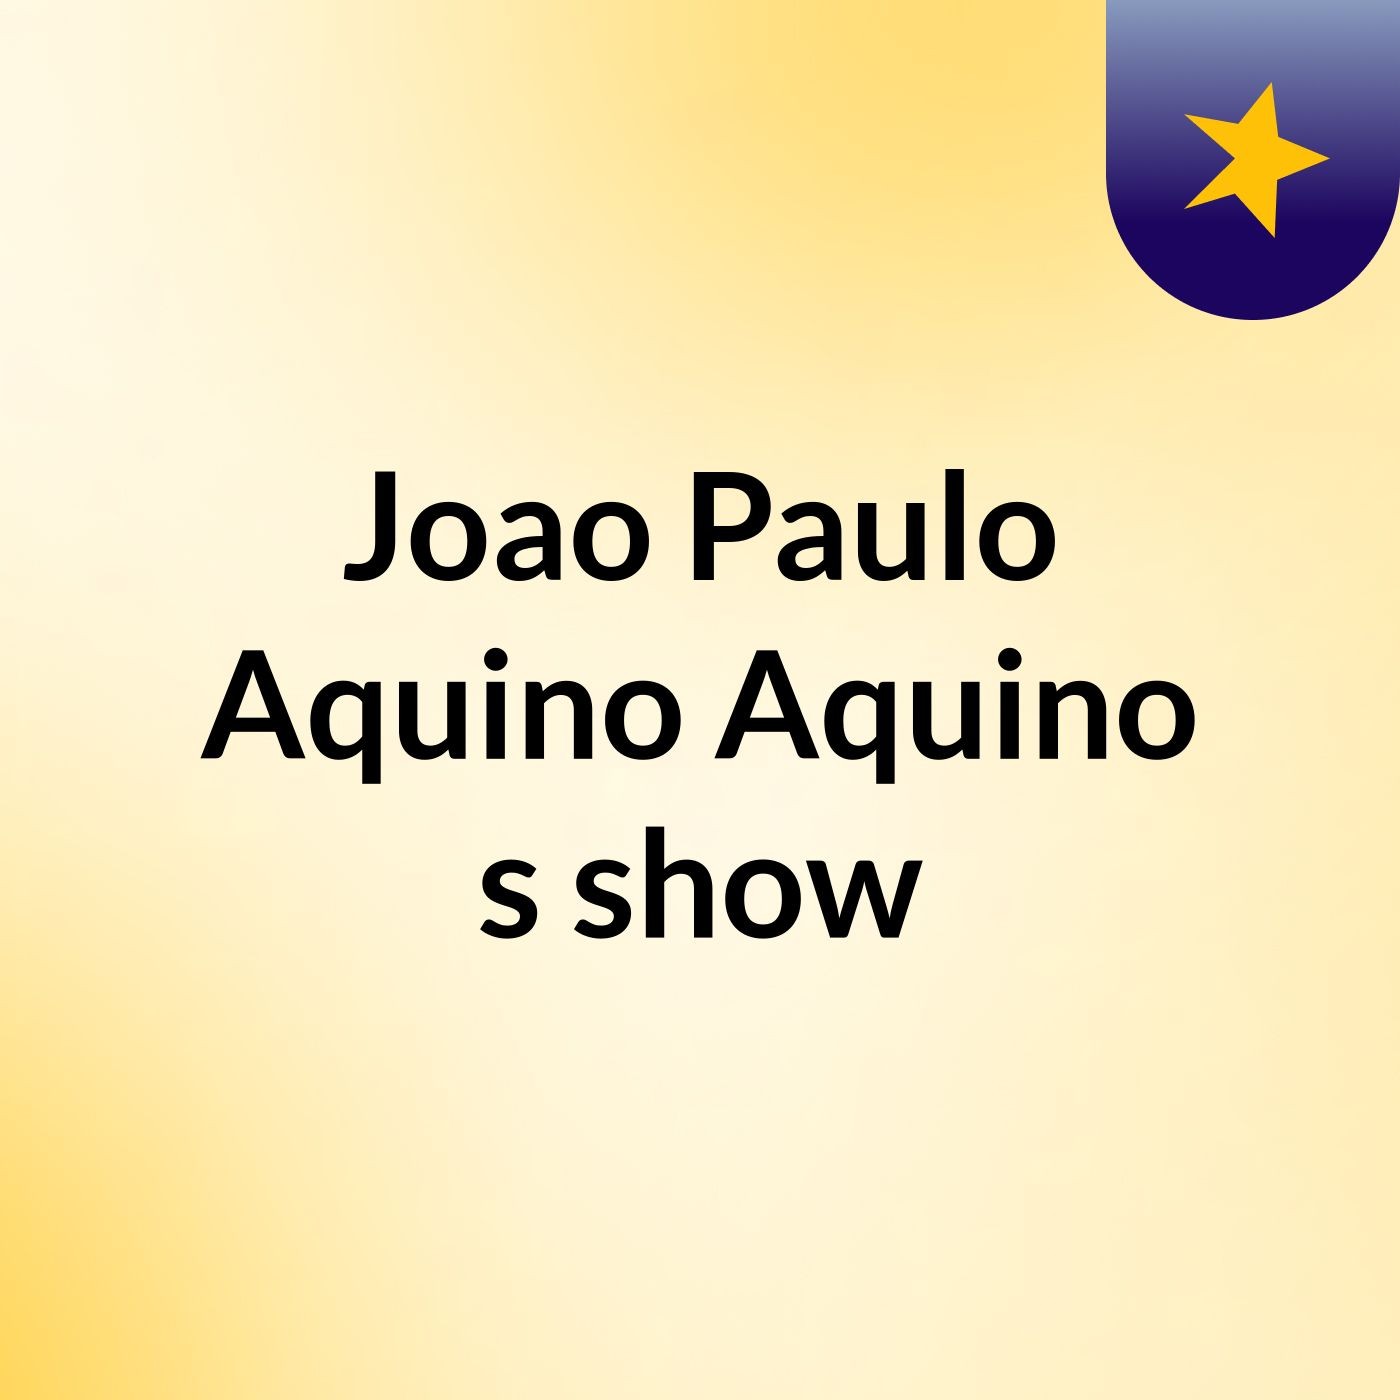 Joao Paulo Aquino Aquino's show